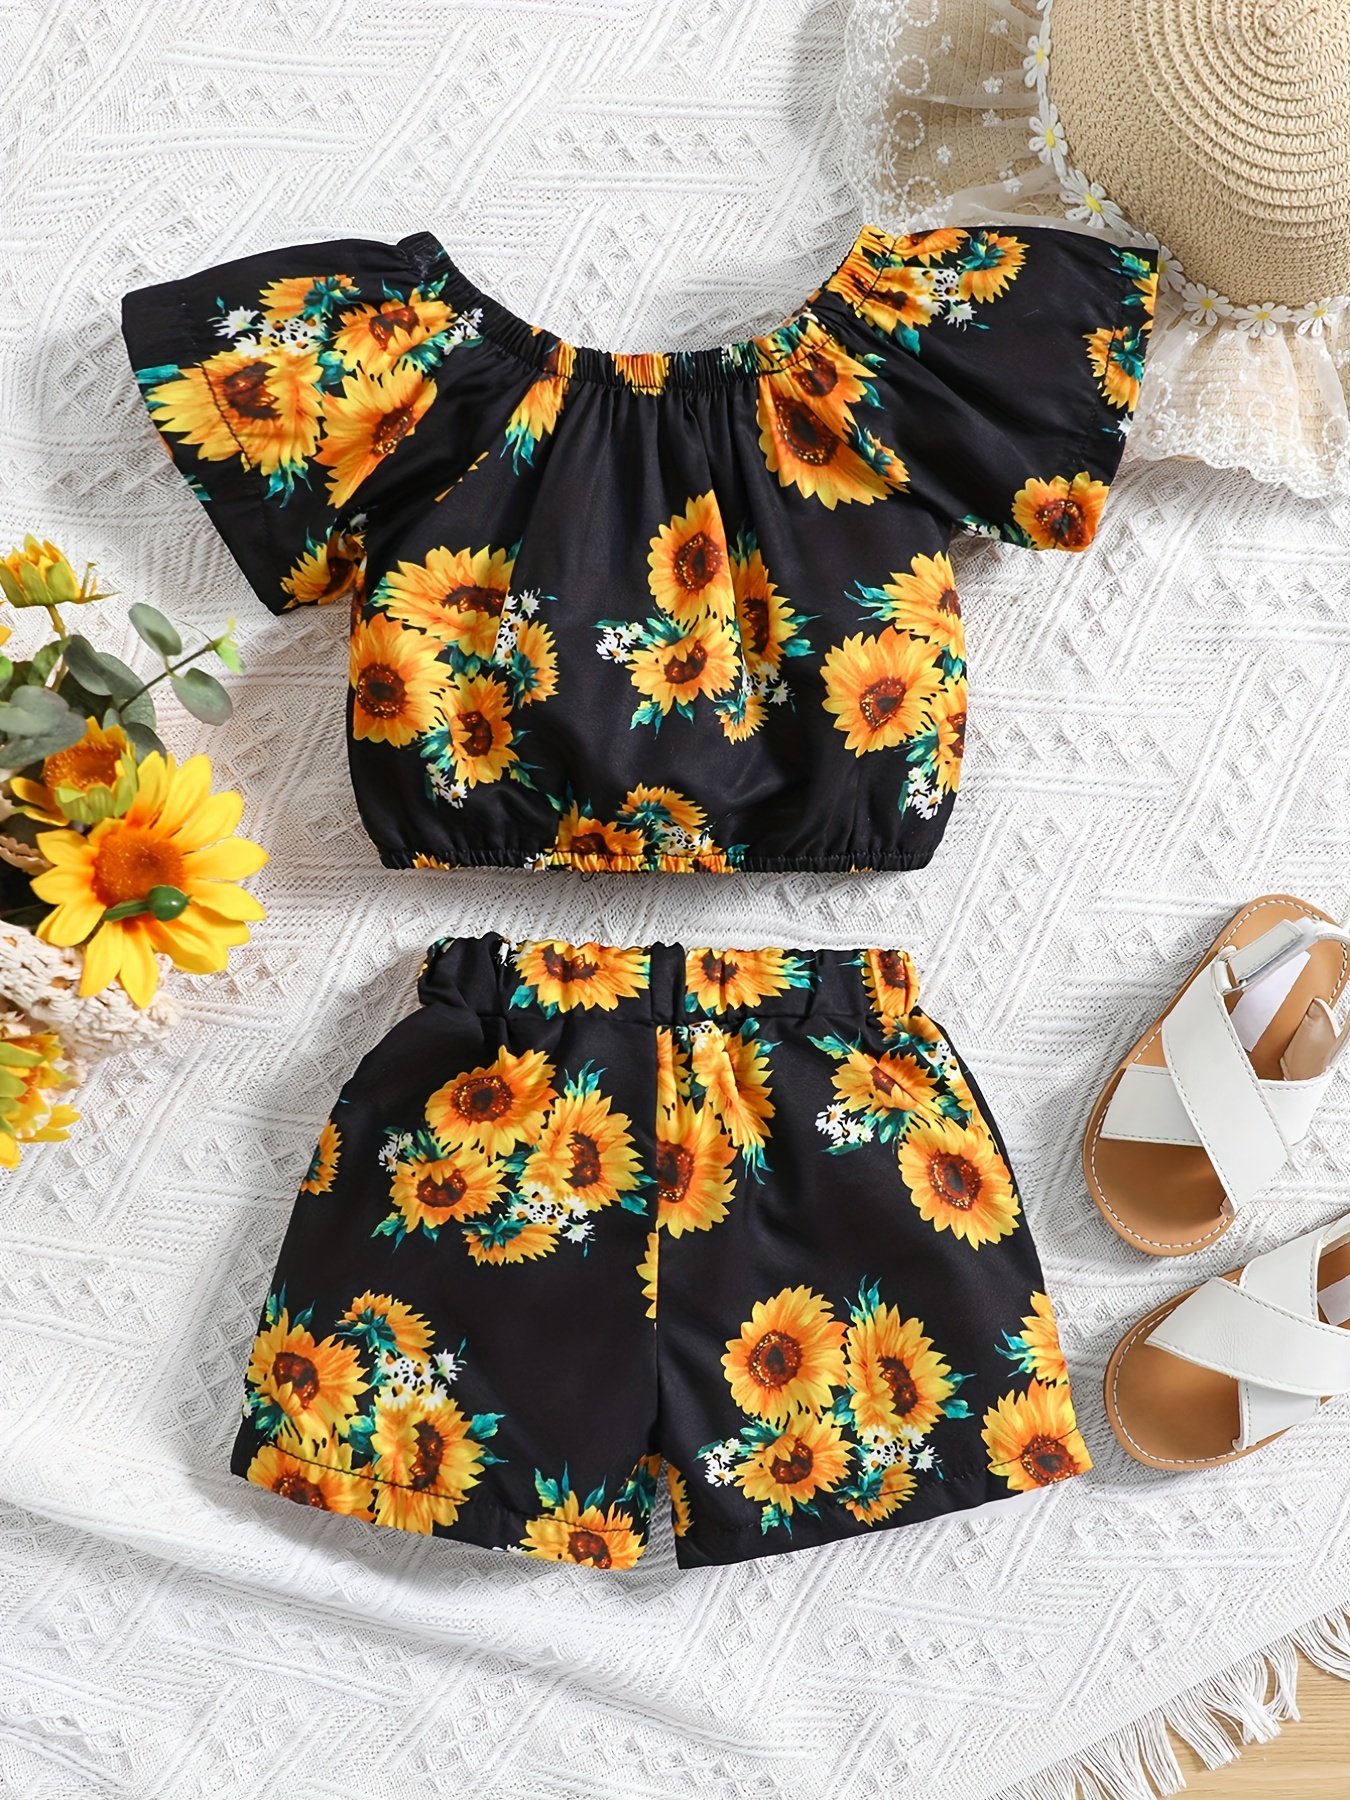 Floral Crop Top / Shorts Set, cute & little